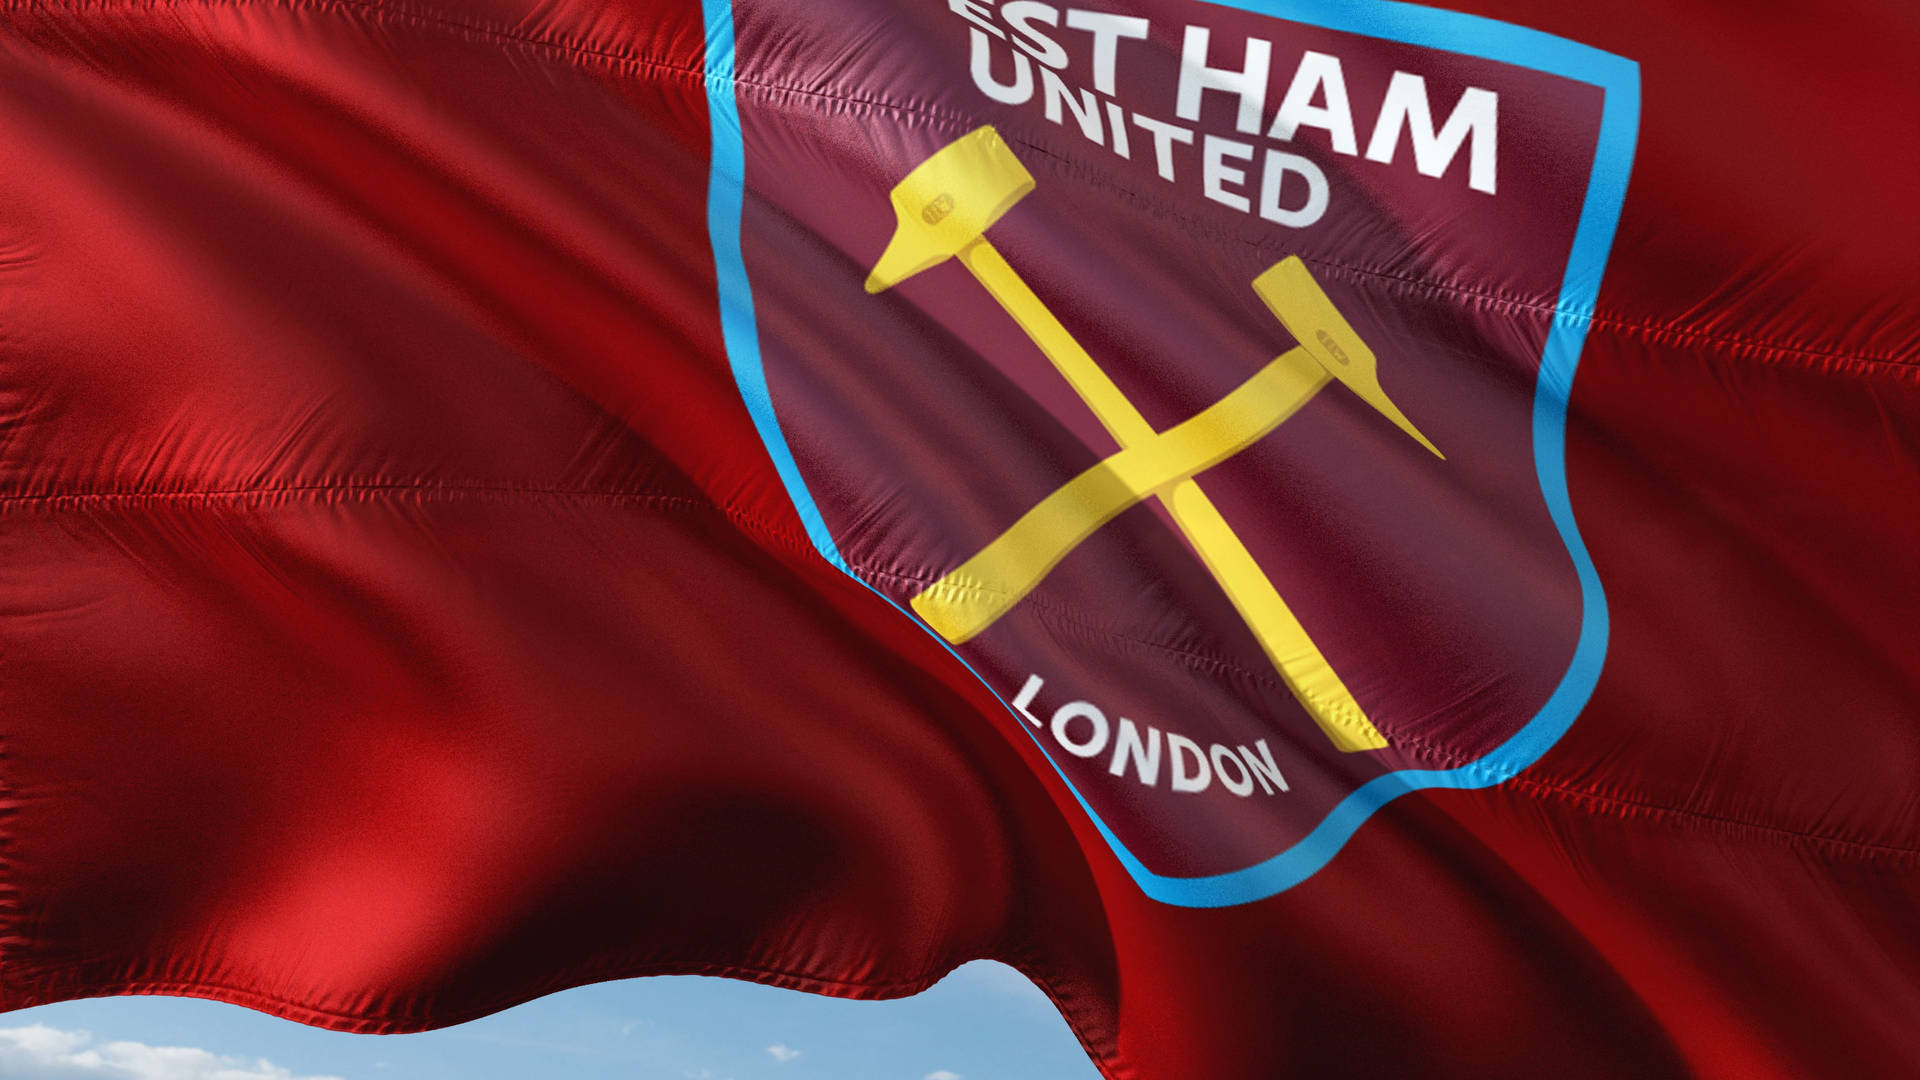 Premier League West Ham United Flag Background